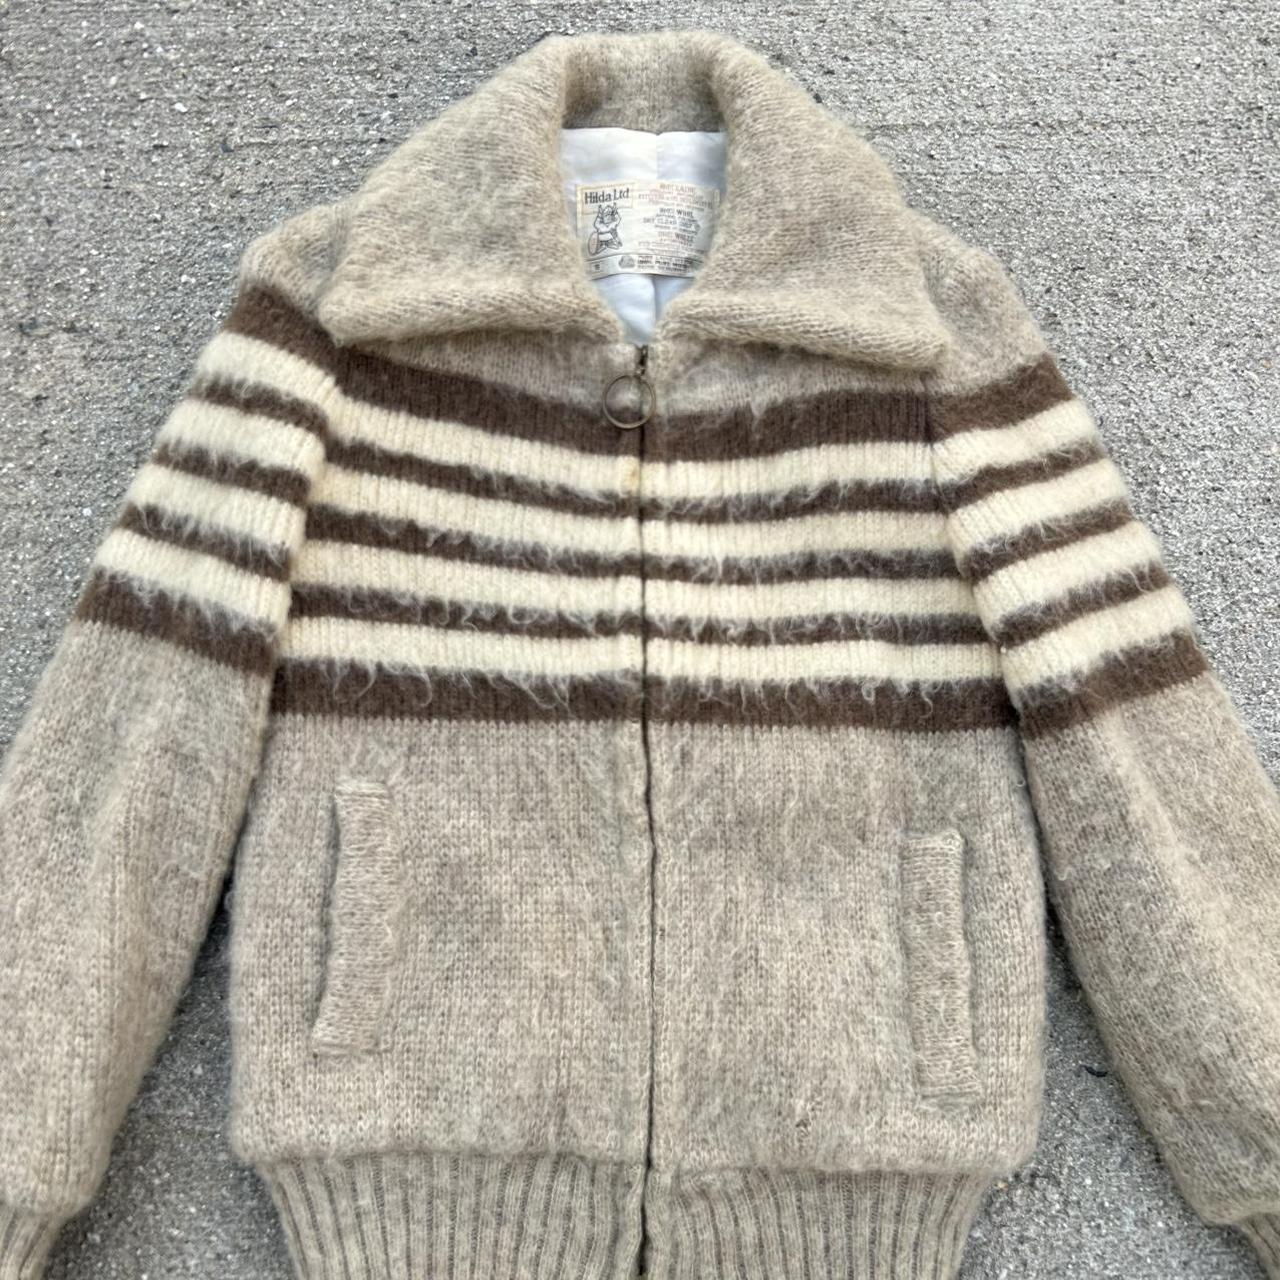 Vintage 60s 70s Hilda wool jacket full zip lined... - Depop